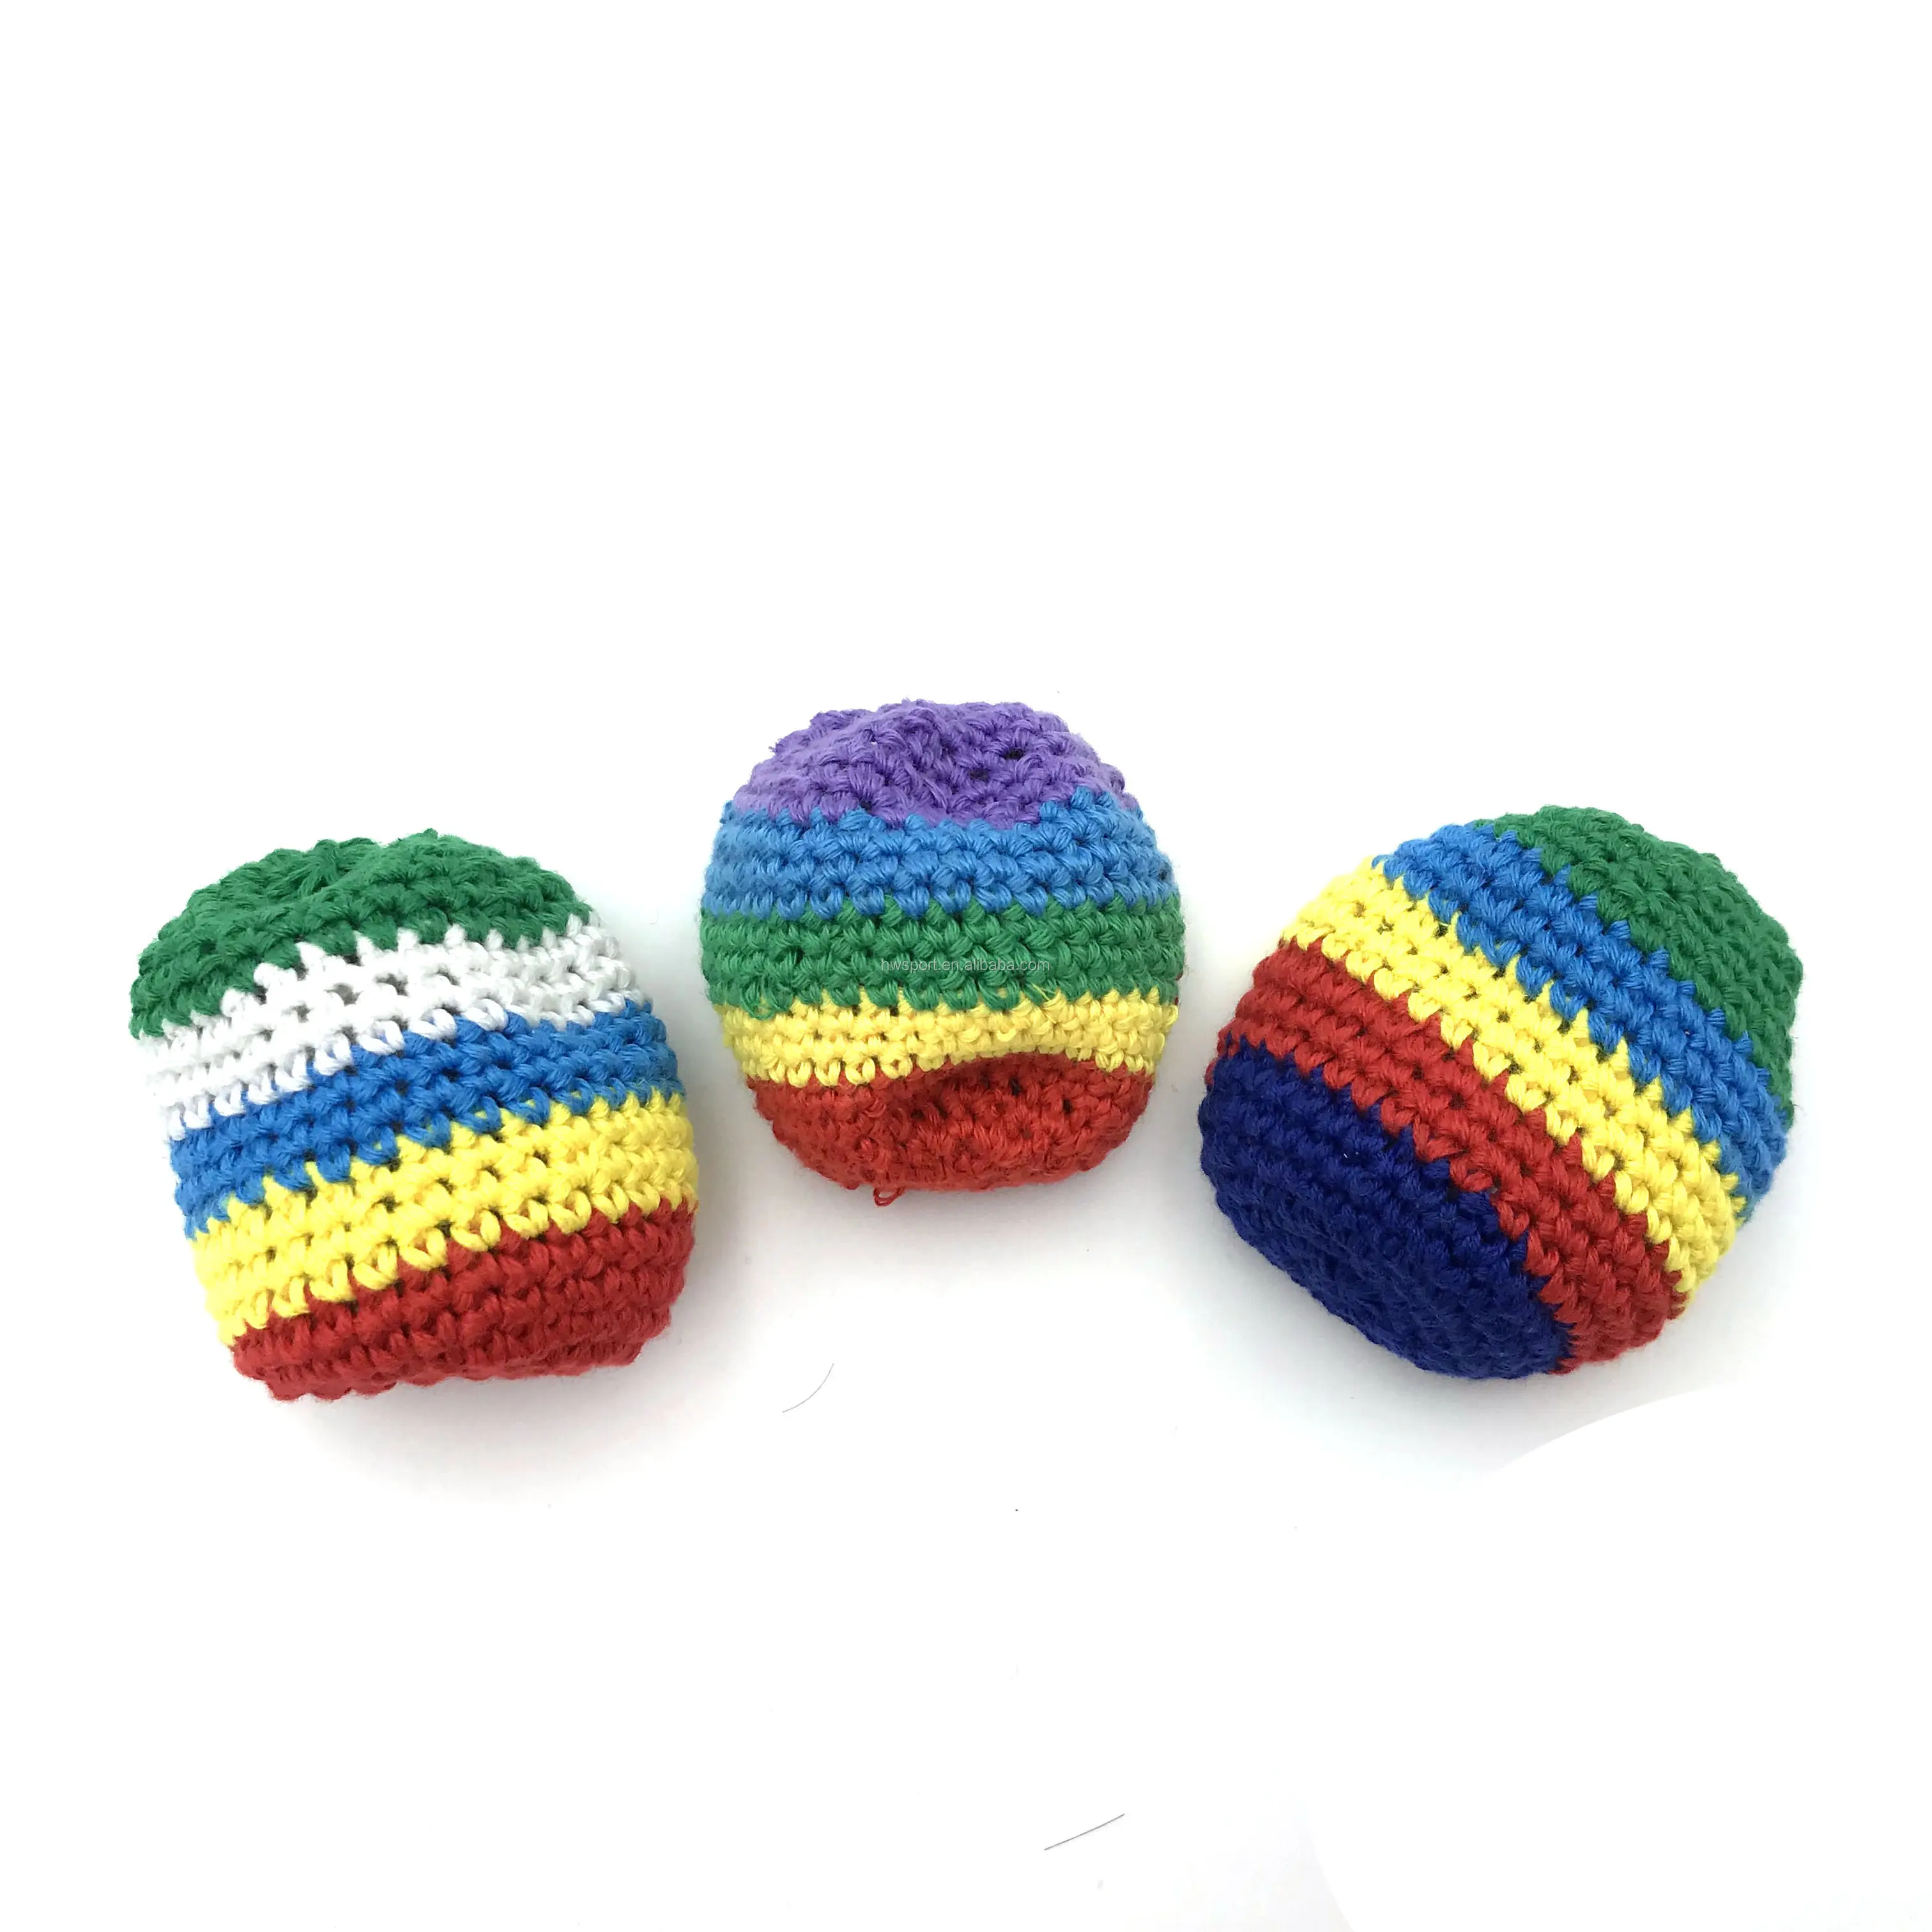 Рекламный Плетеный вязаный жонглирующий мяч ручной работы, индивидуальные Мягкие вязаные набивные мячи с разными цветами на выбор